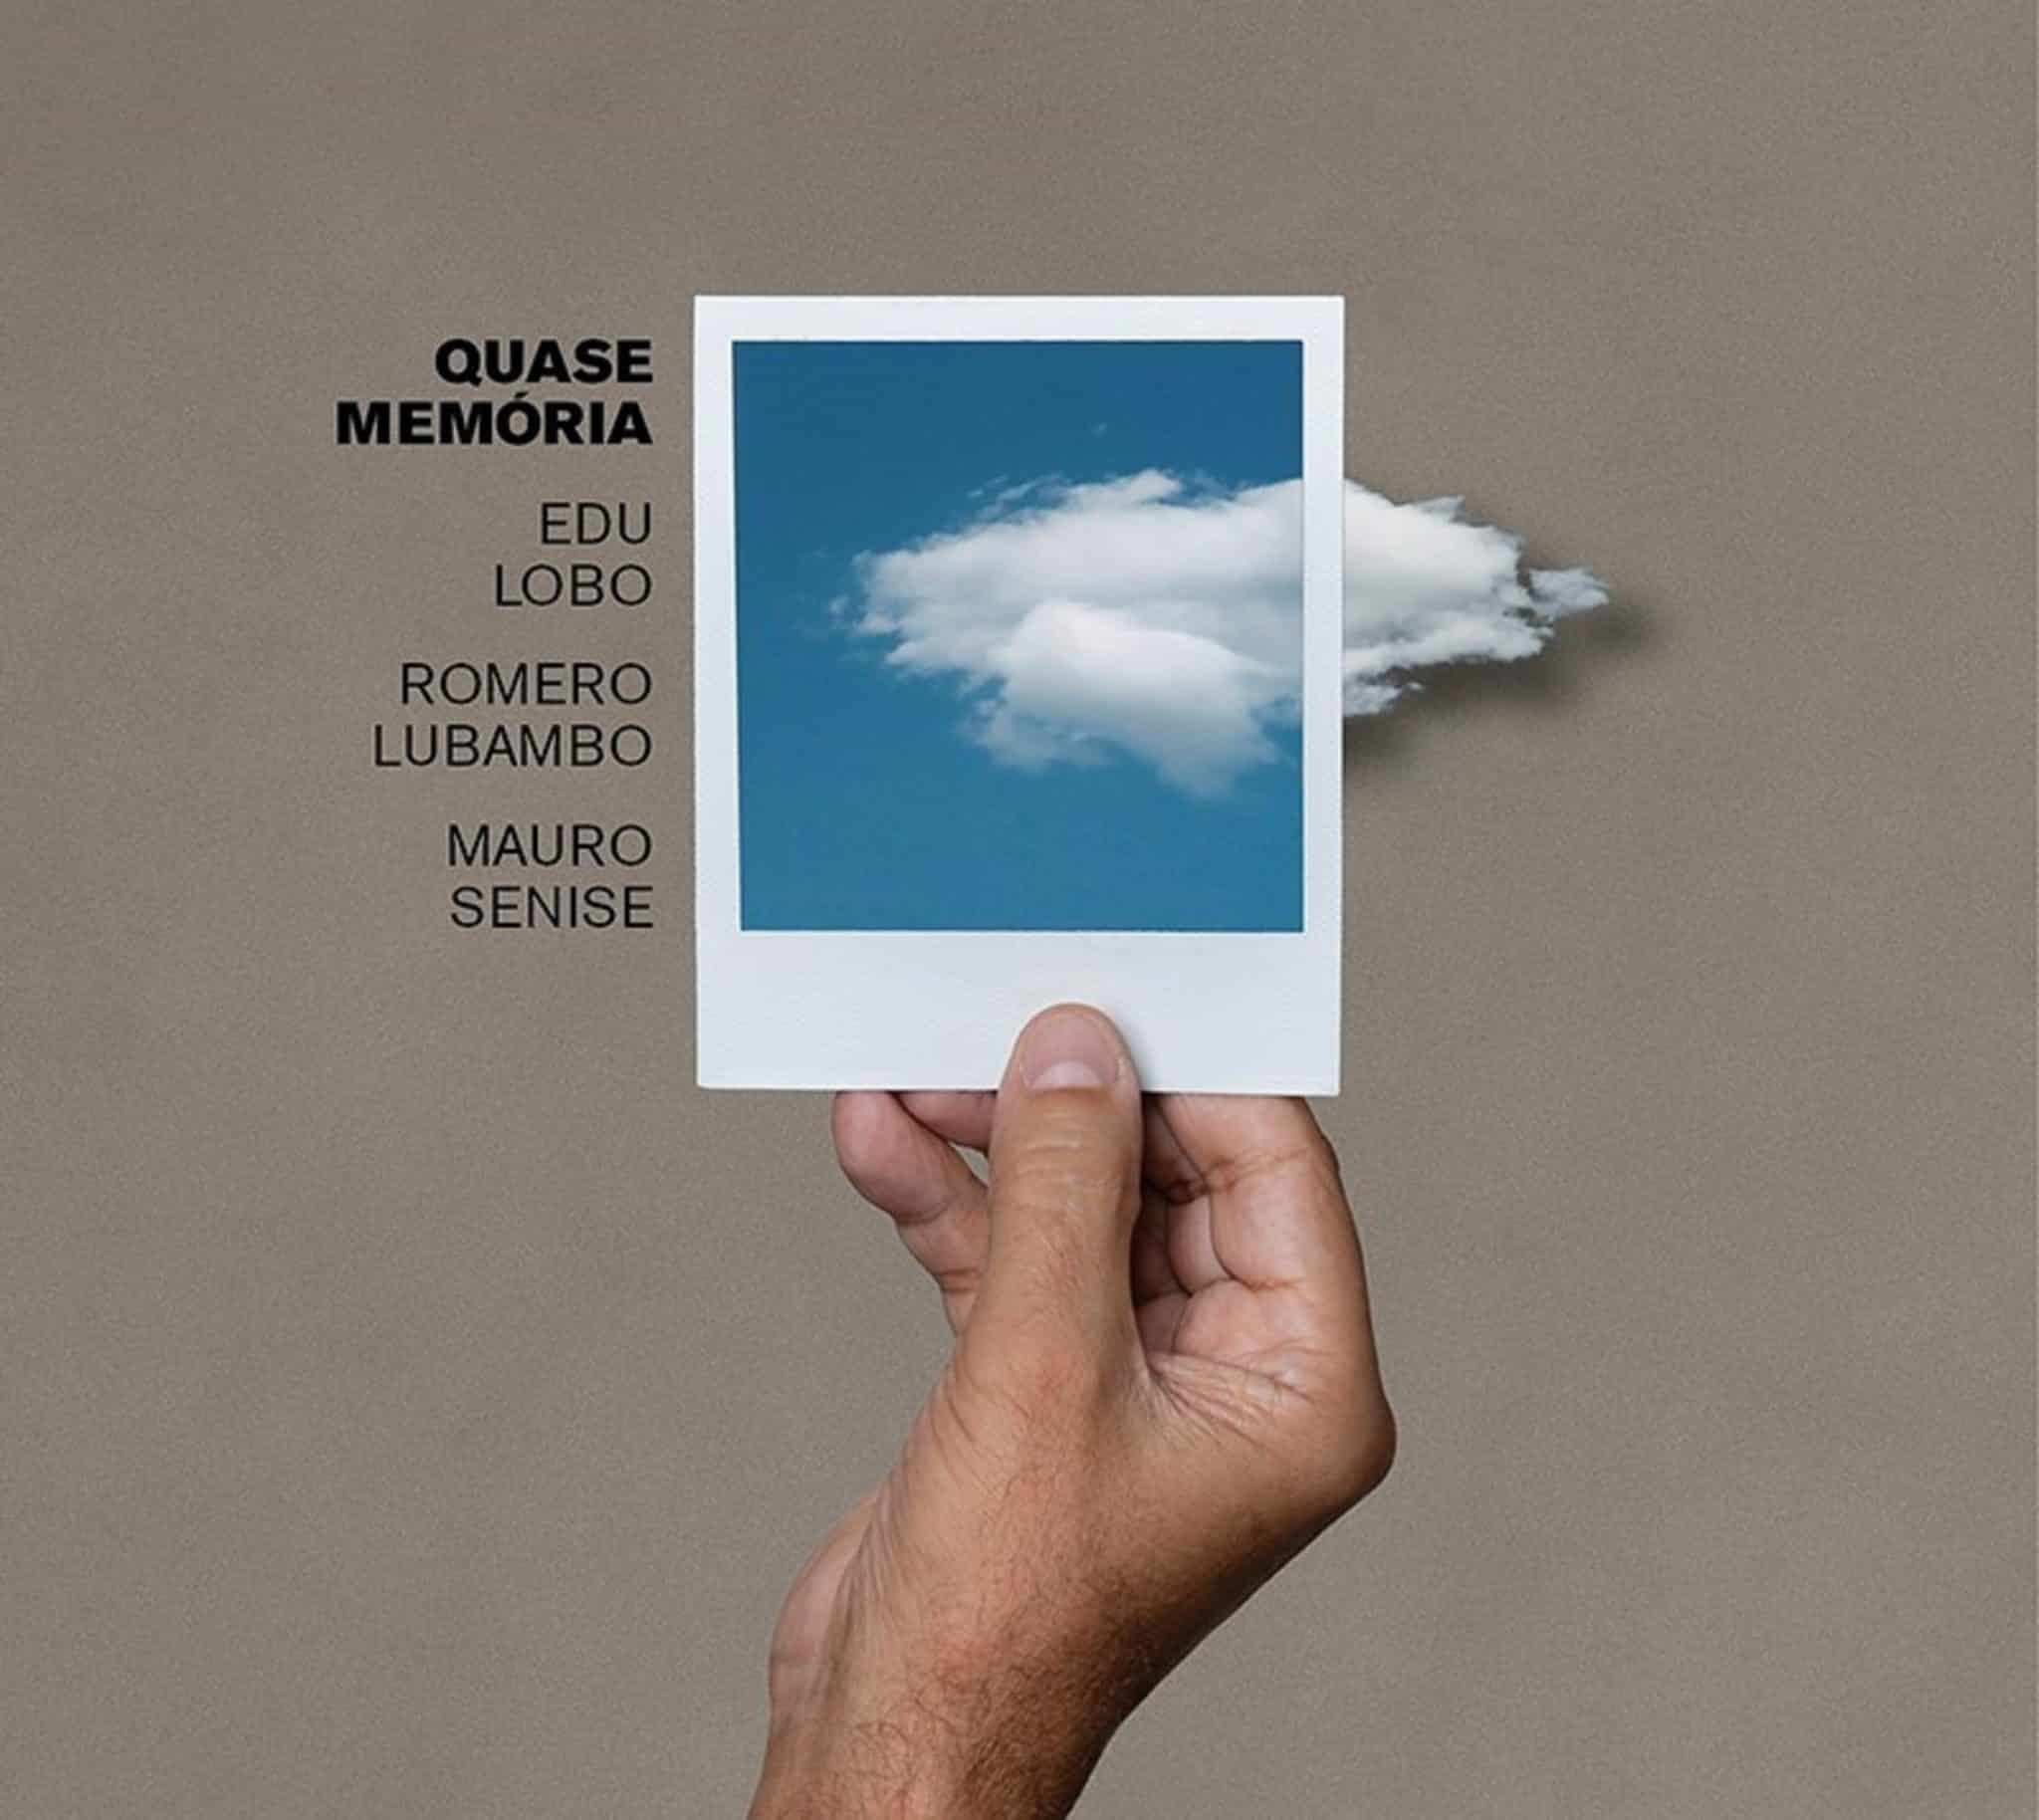 revistaprosaversoearte.com - 'Quase Memória', álbum de Edu Lobo, Romero Lubambo e Mauro Senise